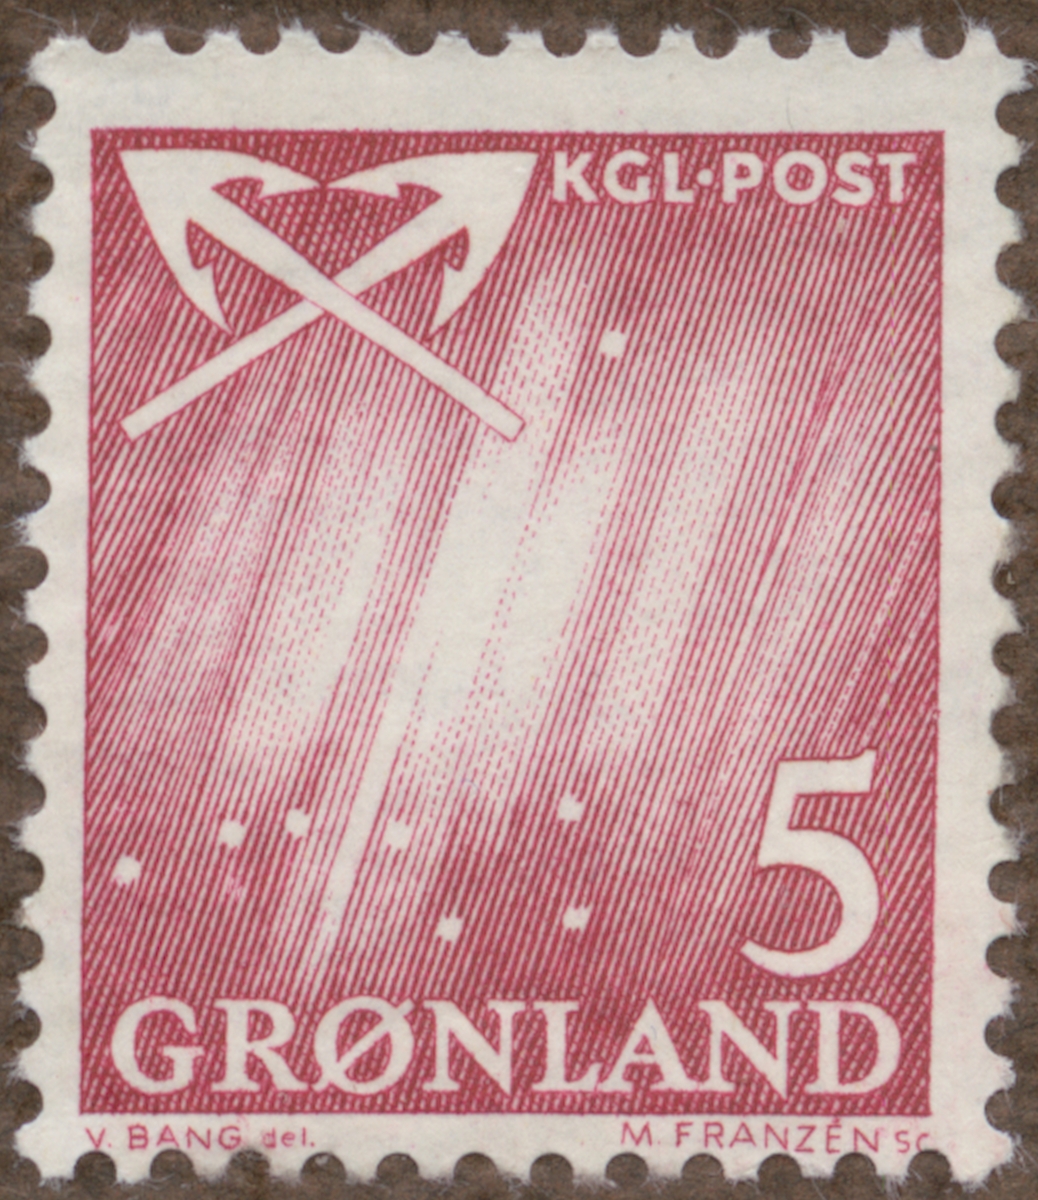 Frimärke ur Gösta Bodmans filatelistiska motivsamling, påbörjad 1950.
Frimärke från Grönland, 1963. Motiv av Vapen; harpuner - symbol för valfångst i Grönland-